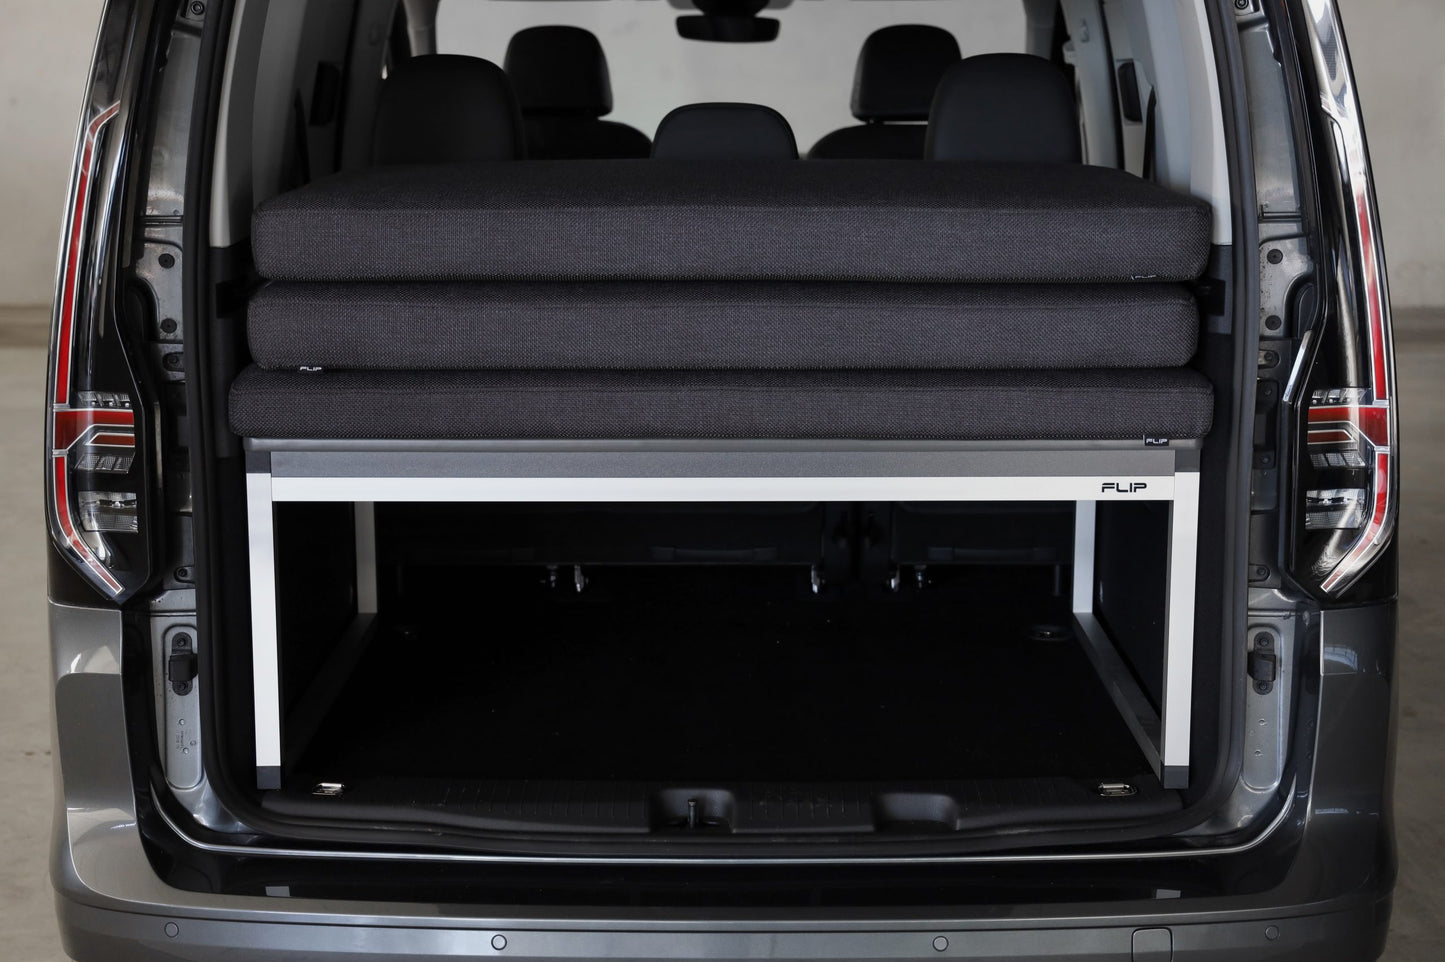 Volkswagen Caddy Maxi (2003-2020) adventure bed